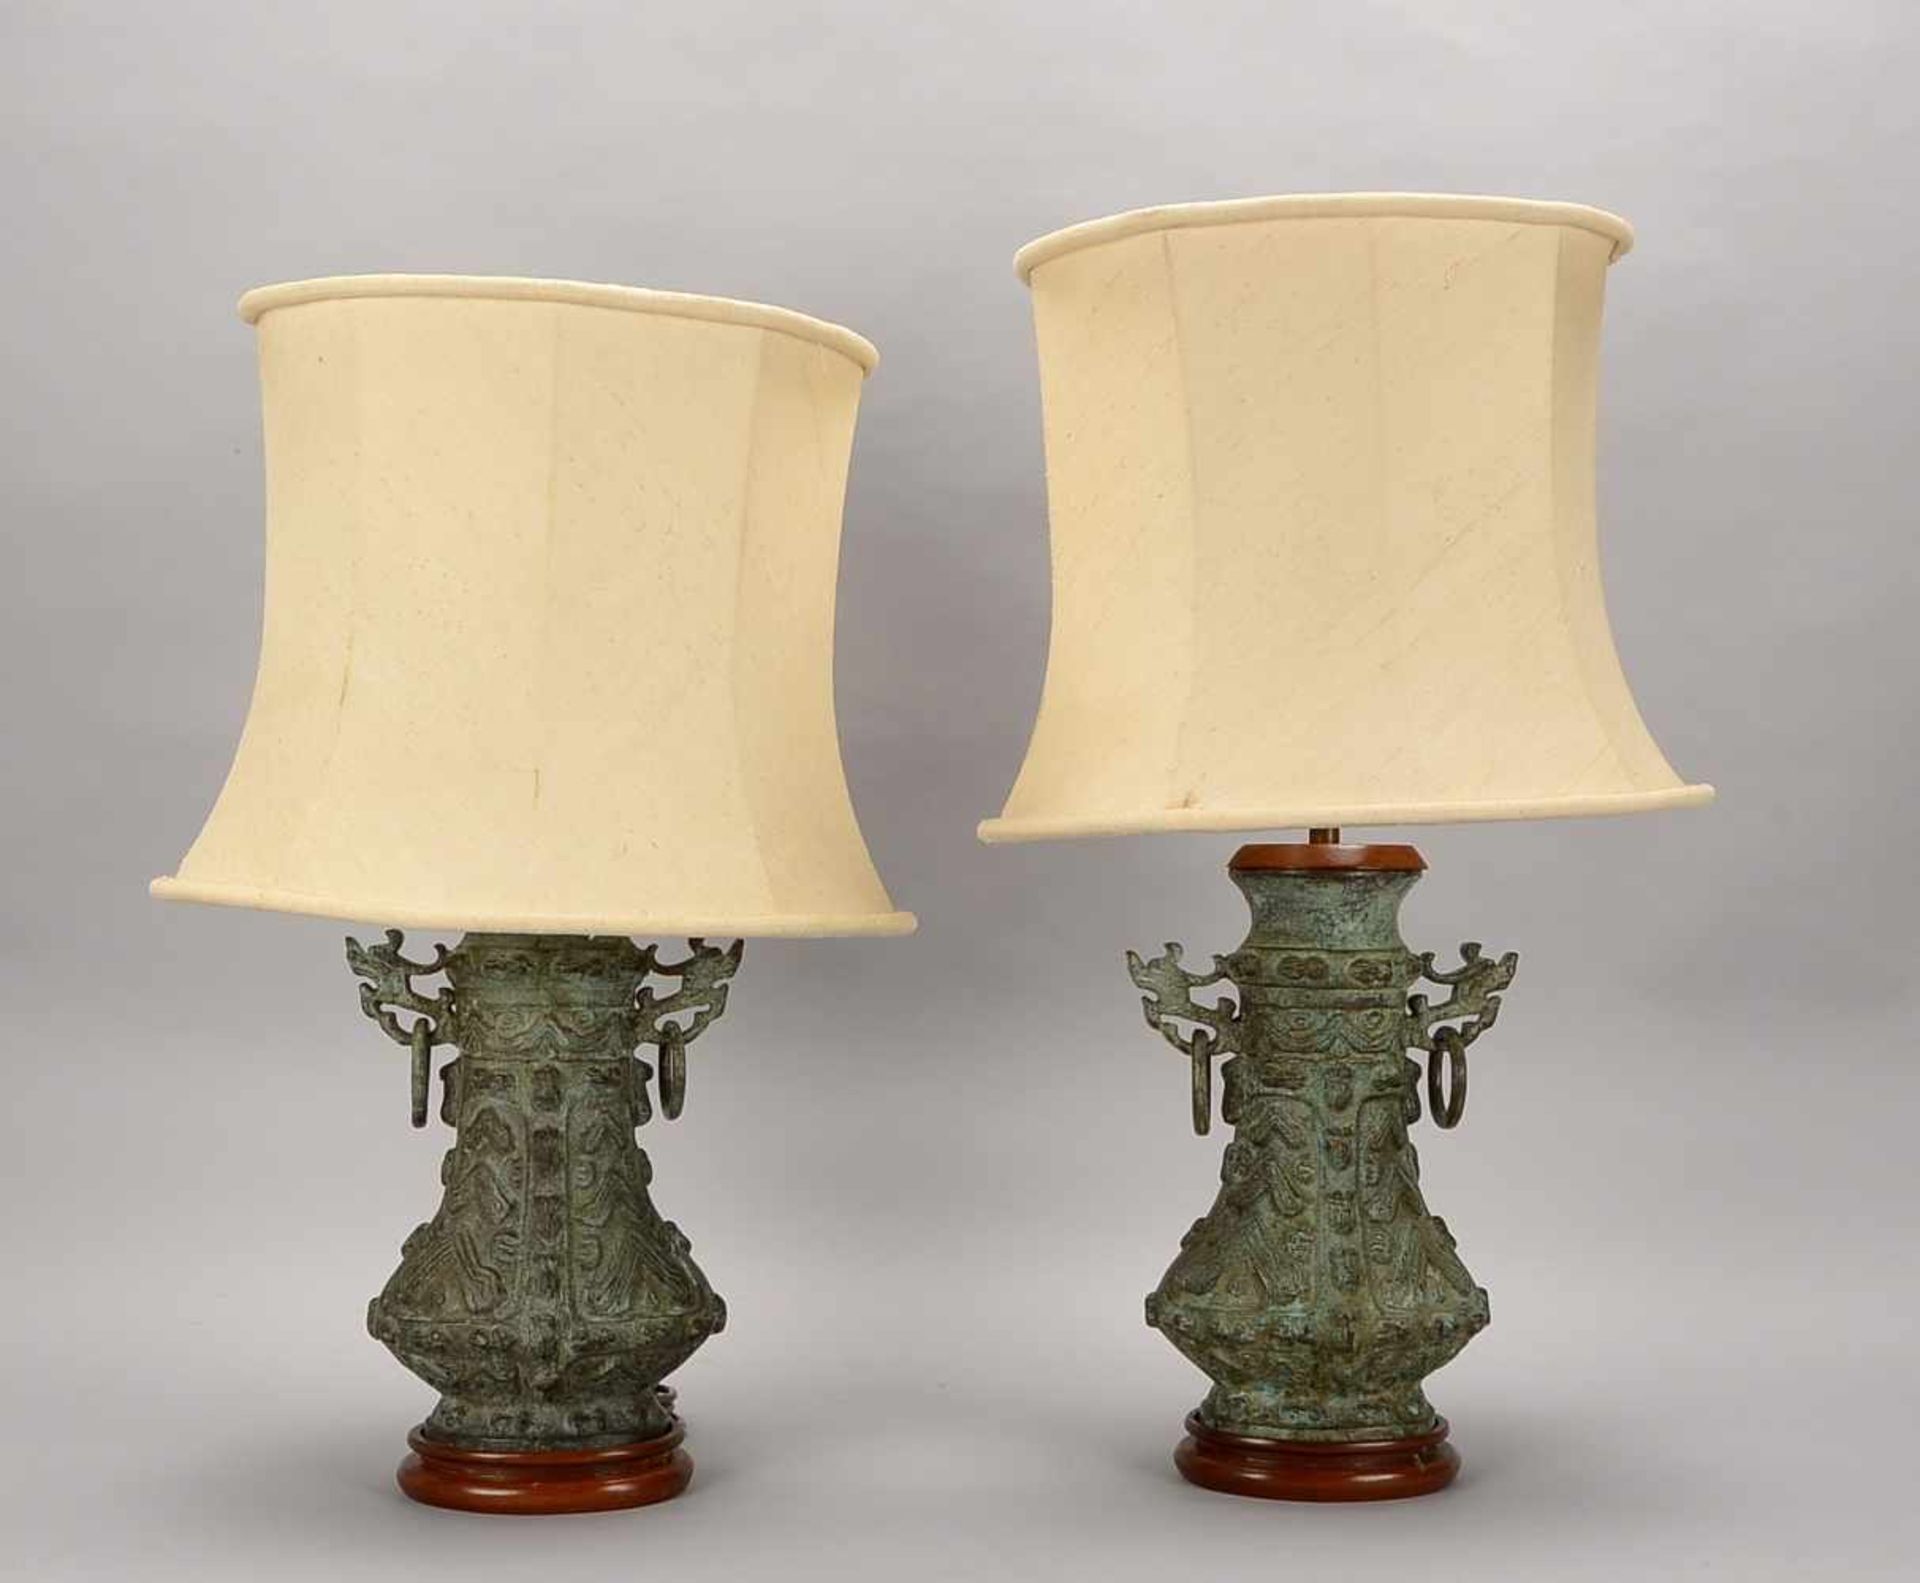 Paar Tischlampen, China, je 2-flammig/mit 2x Stoff-Schirmen, Bronze-Korpus/grün patiniert, stark